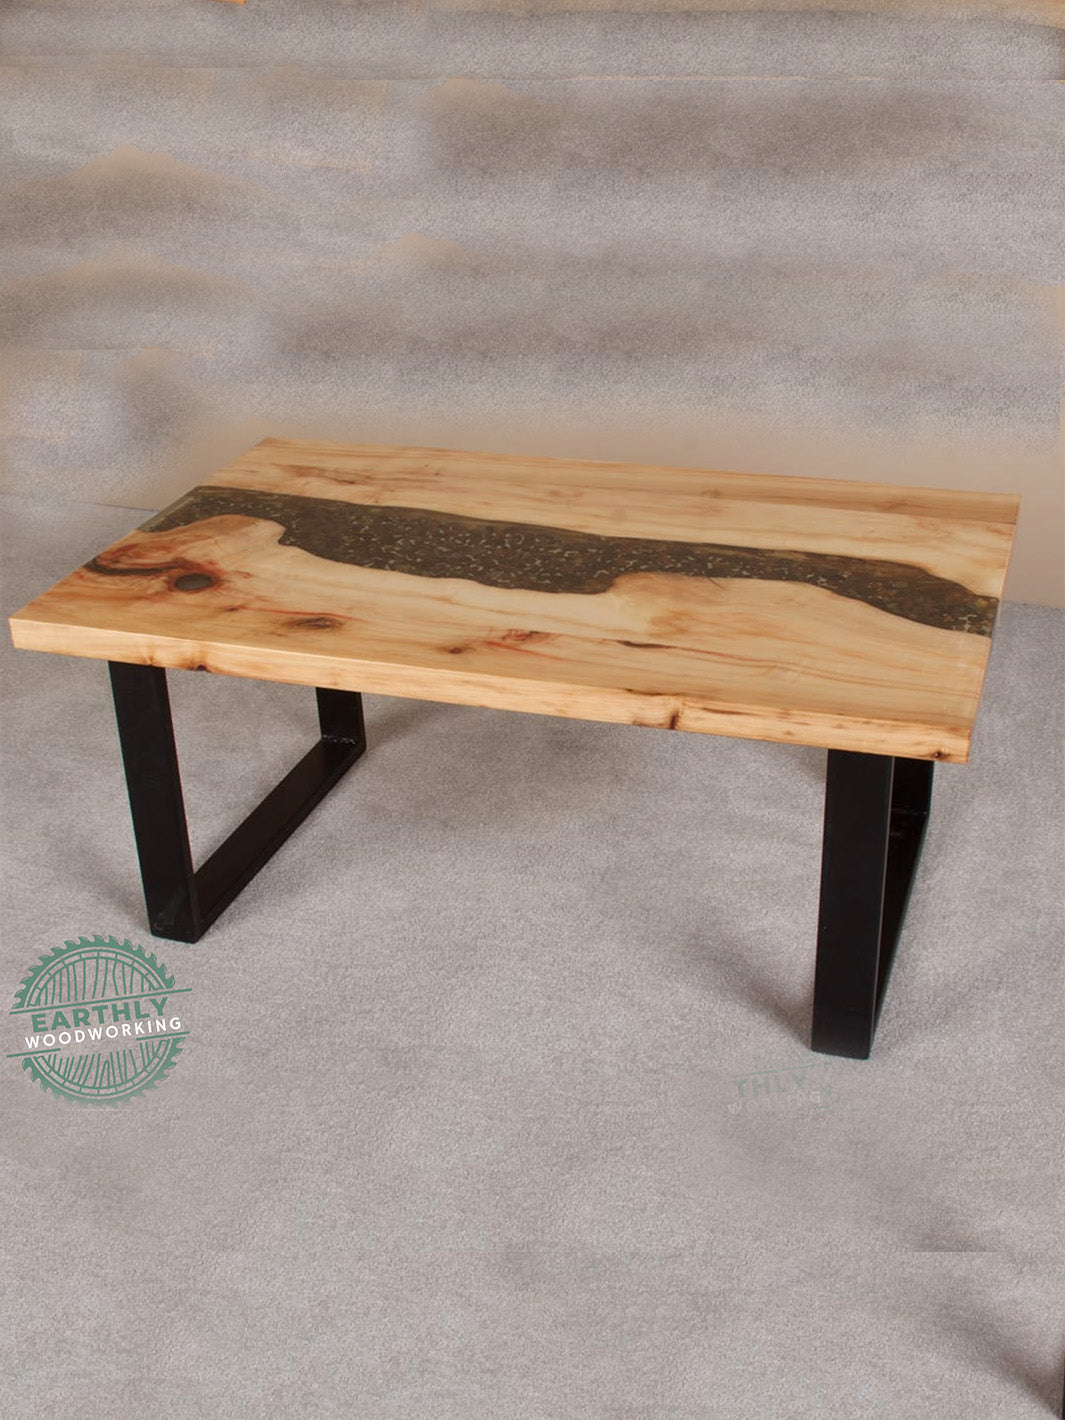 Hardwood Epoxy River Rock Coffee Table Earthly Comfort Woodworking Earthly Comfort  -8